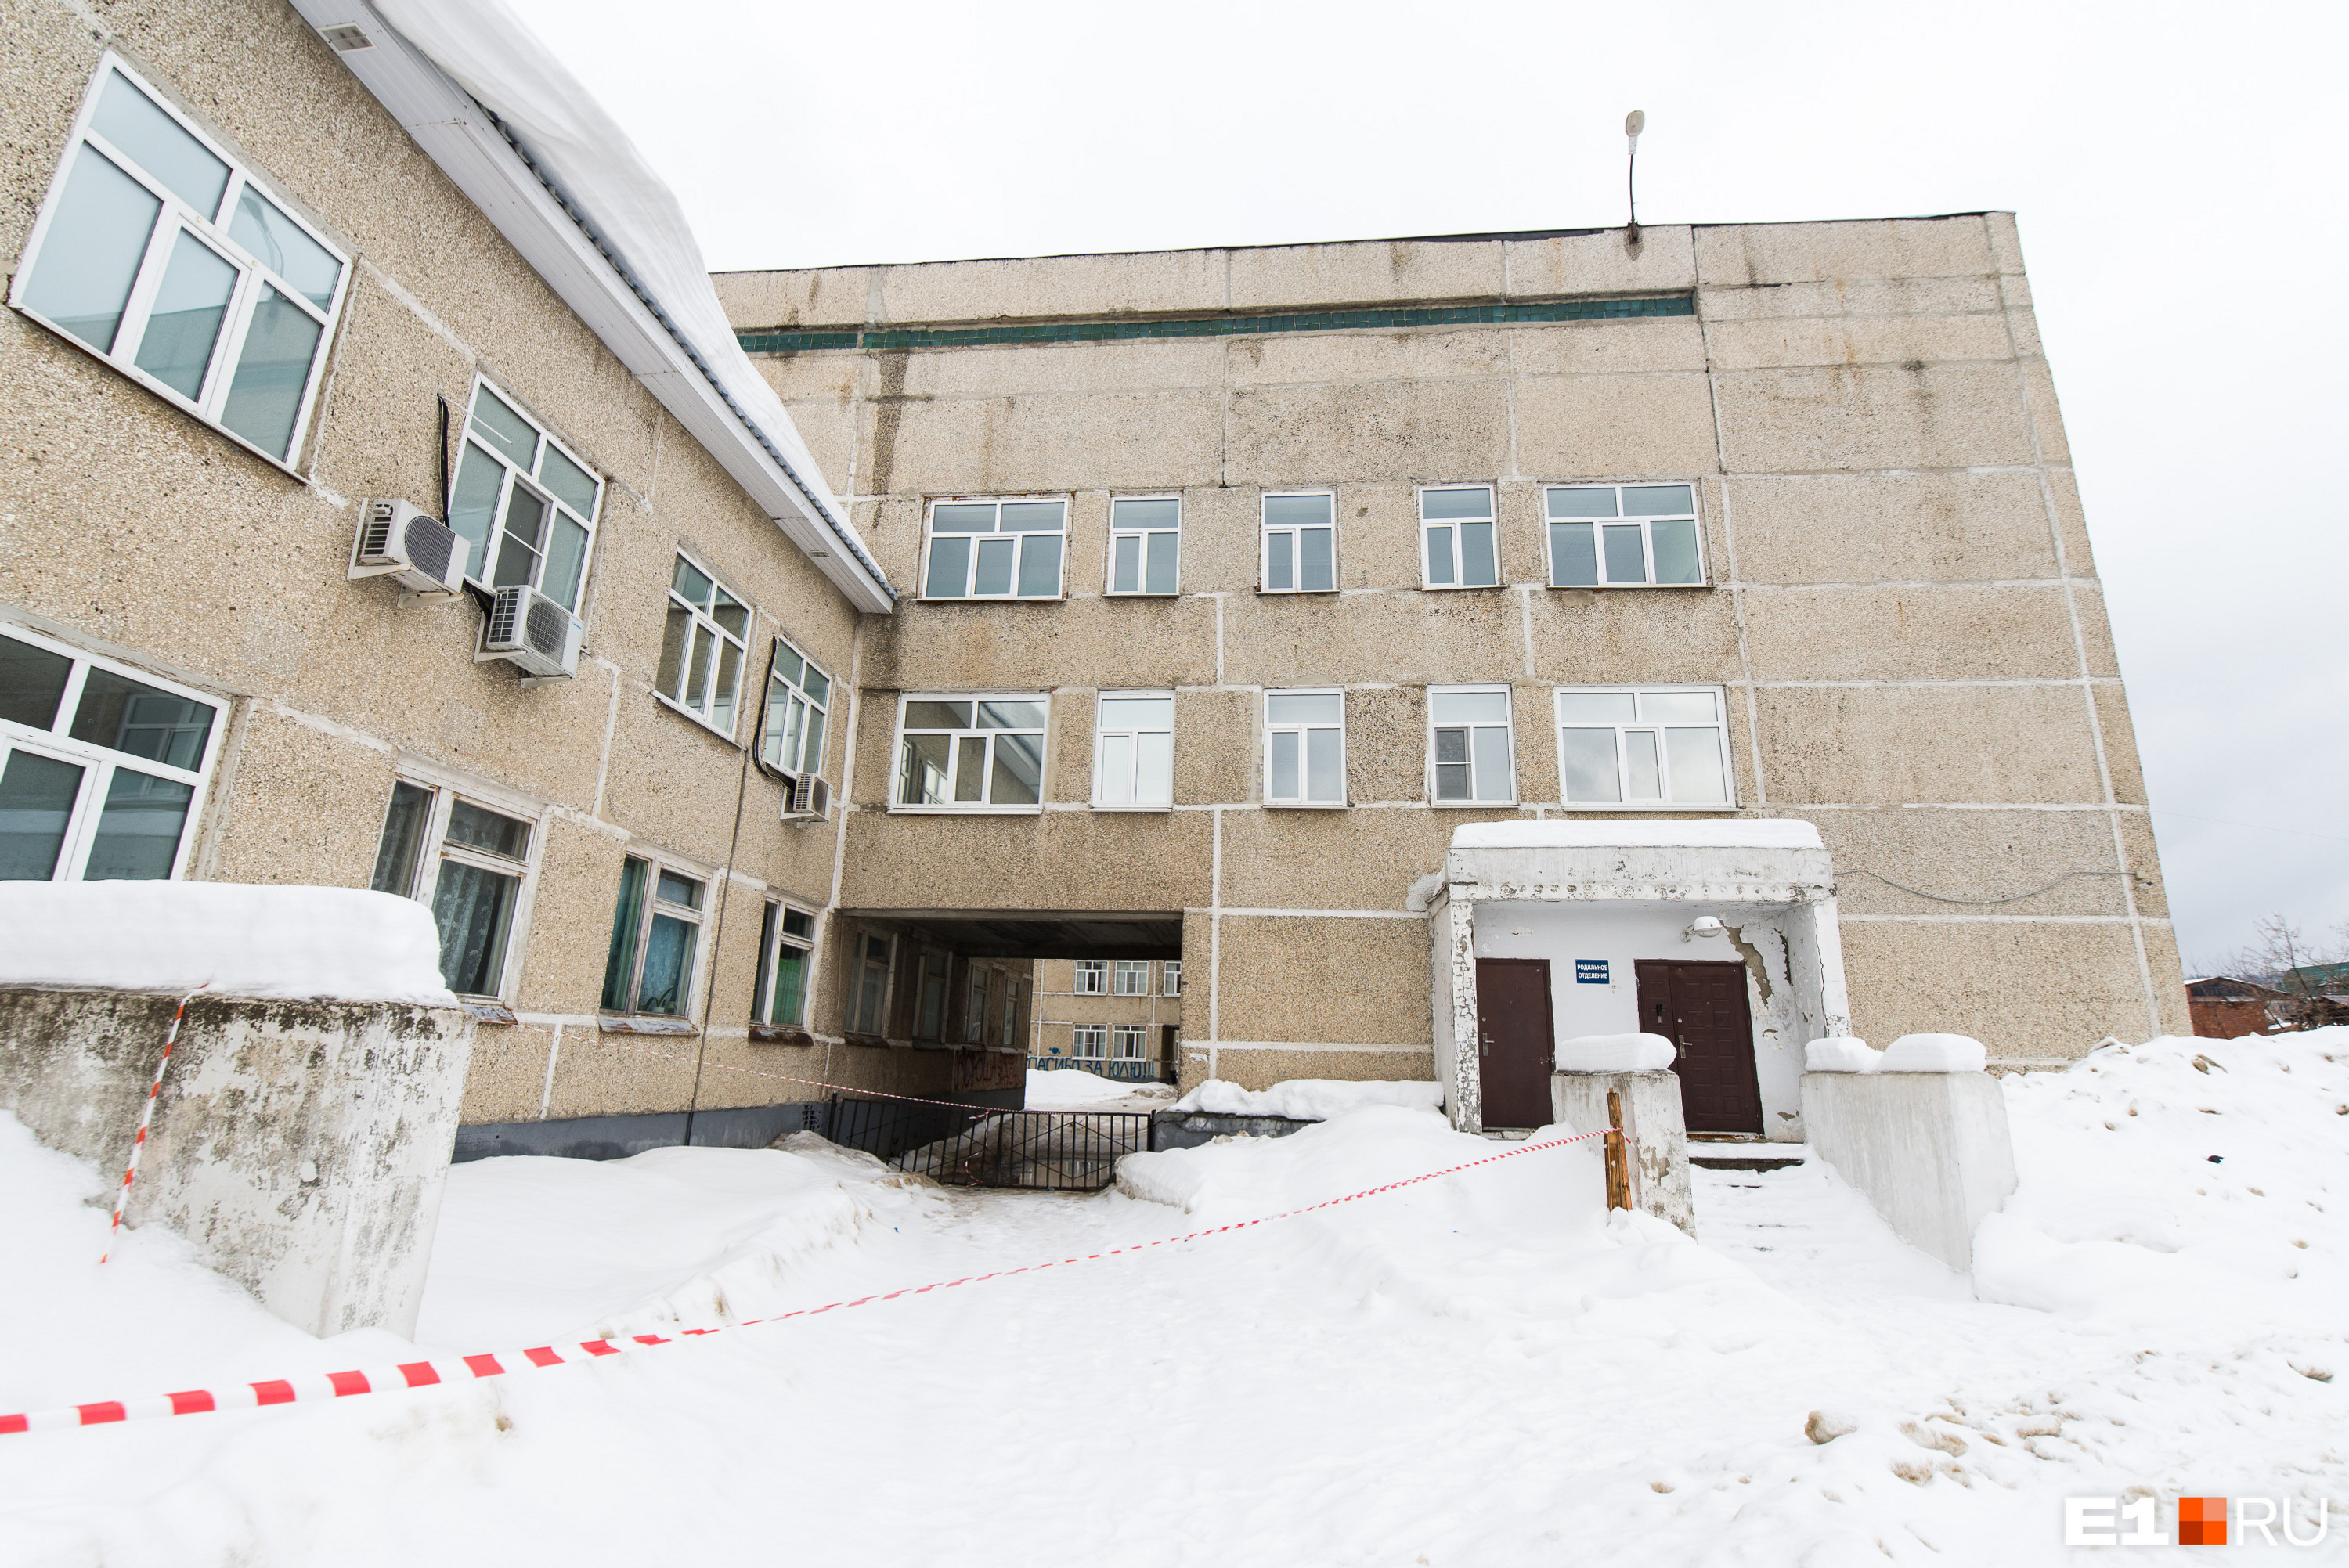 Родильное отделение Центральной районной больницы Нижних Серег после ЧП на две недели закрыли на дезинфекцию